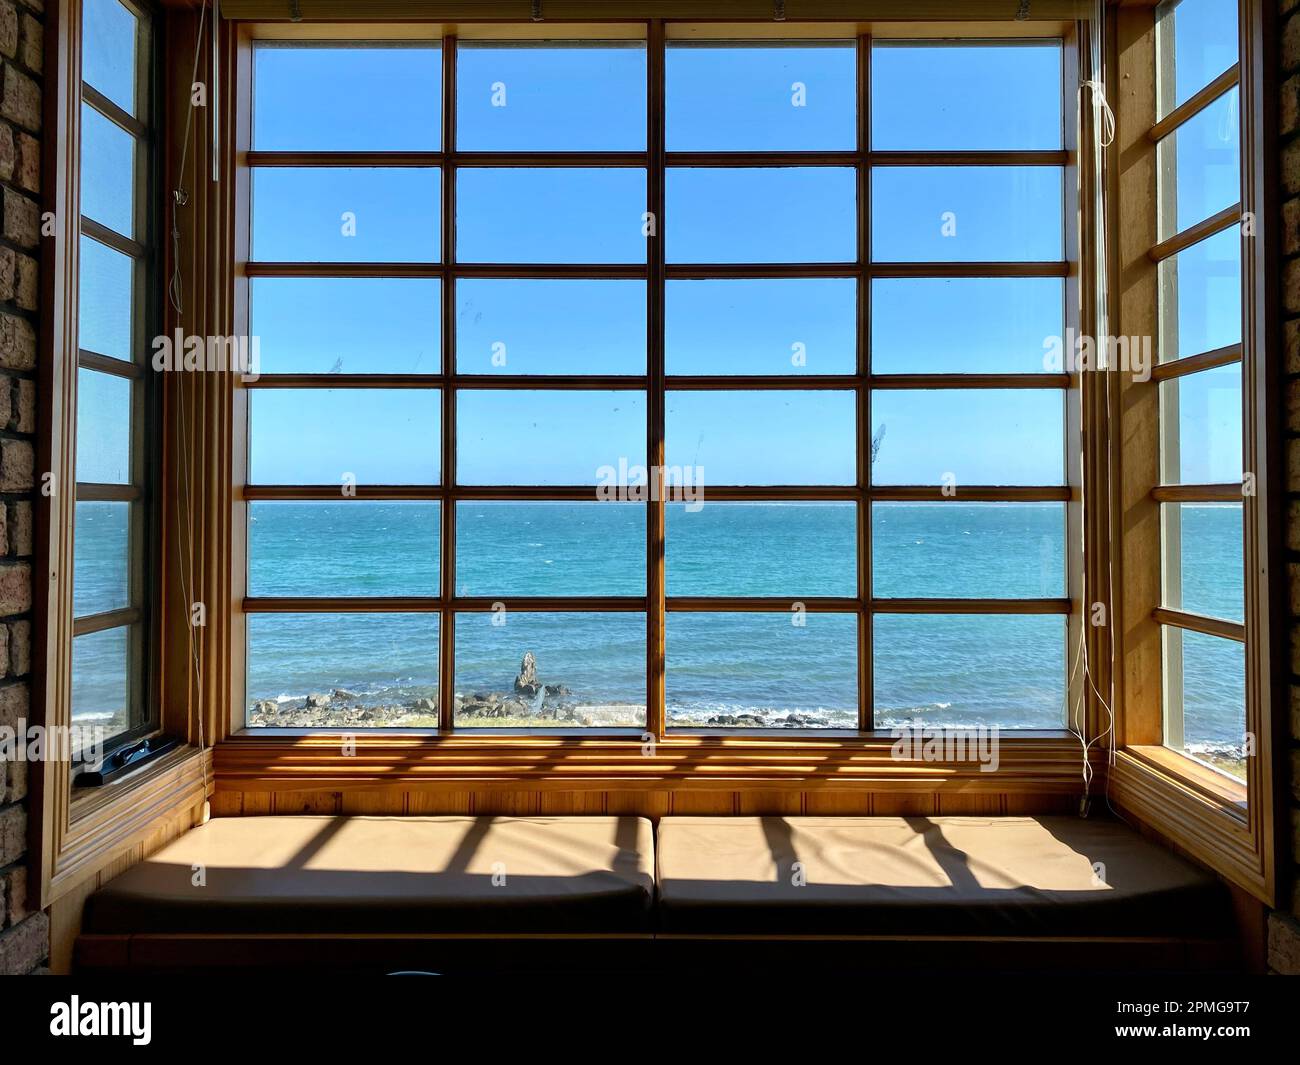 Une grande fenêtre ouverte dans un bâtiment en briques offre une vue imprenable sur l'océan en contrebas Banque D'Images